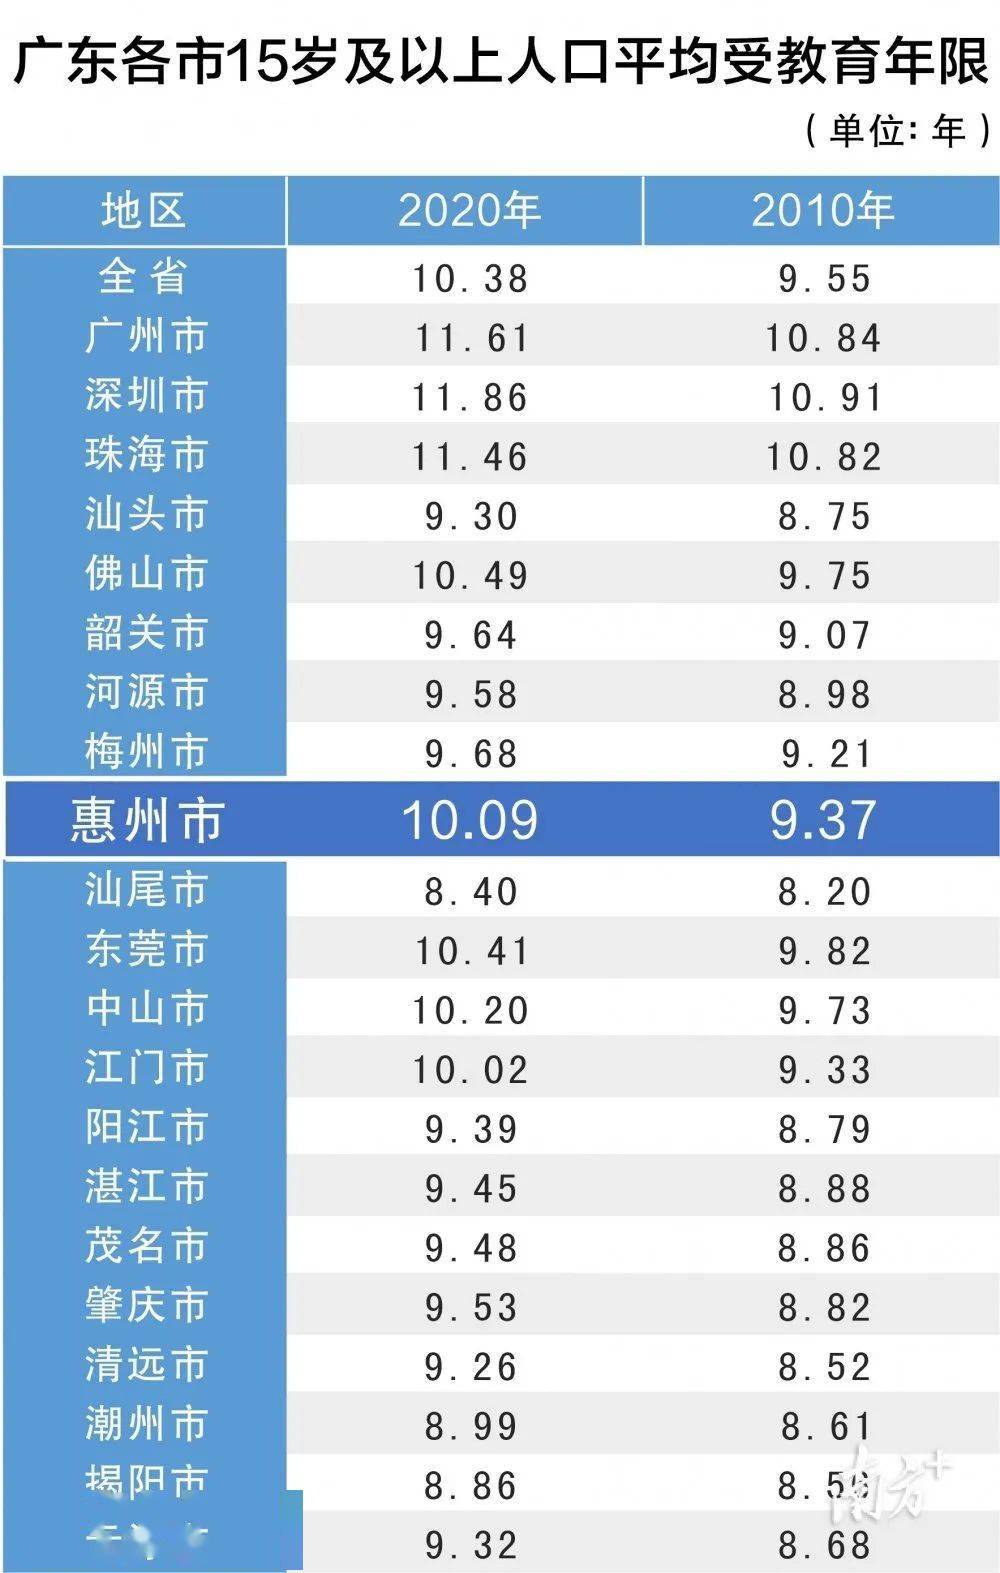 惠州常住人口2021_1个月狂卖2万套房 这个城市,到底是风口还是巨坑